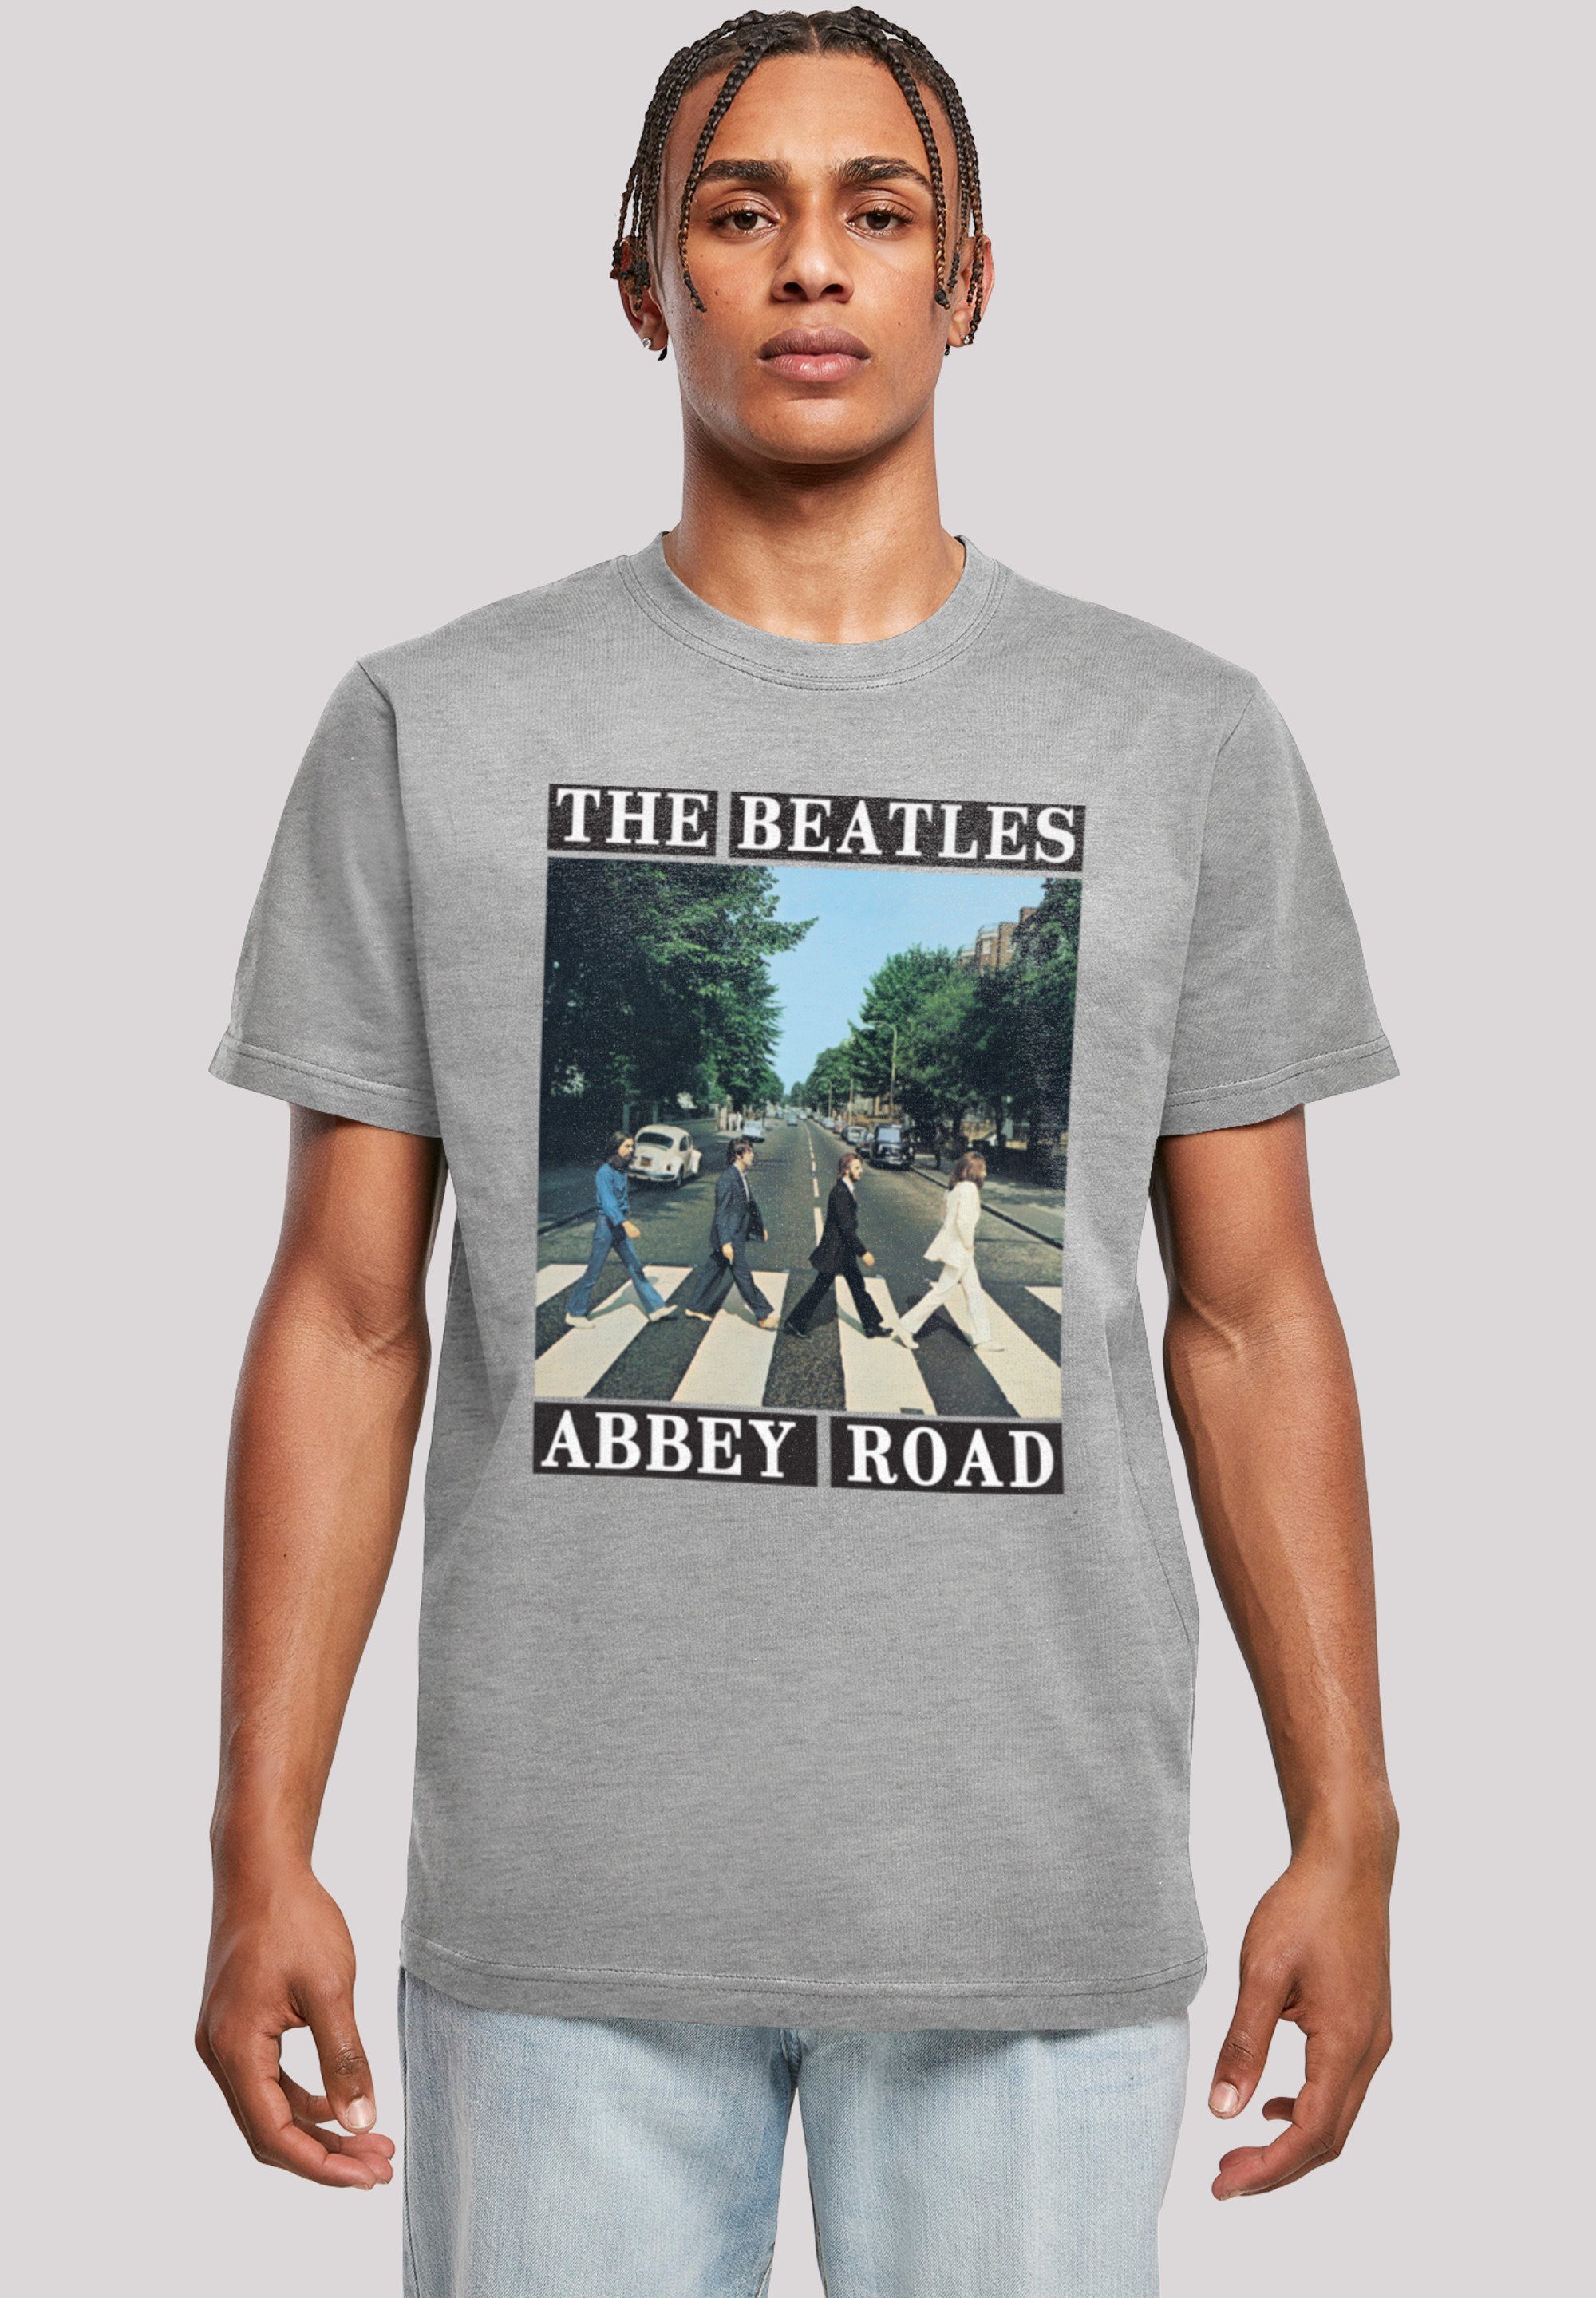 Sehr Print, F4NT4STIC The Tragekomfort Band T-Shirt weicher mit Beatles Abbey hohem Road Baumwollstoff